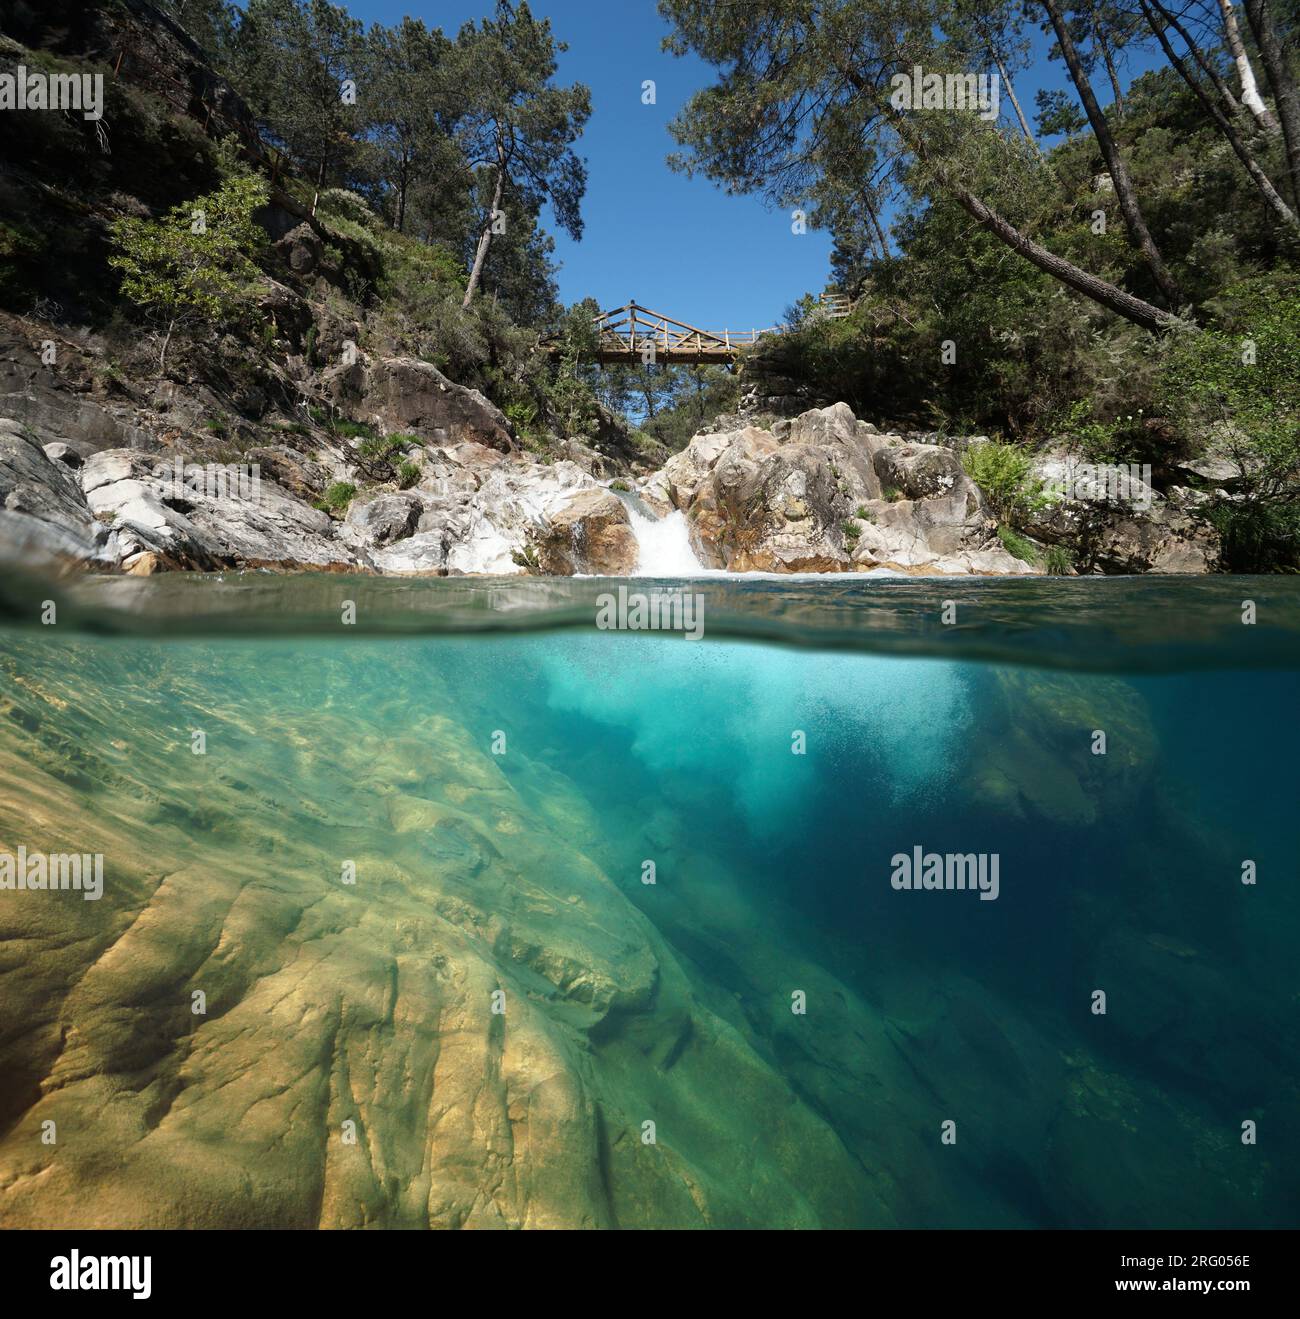 Cascade avec piscine naturelle dans une rivière, vue partagée sur et sous la surface de l'eau, scène naturelle, Espagne, Galice, province de Pontevedra, Pozo del Arco Banque D'Images